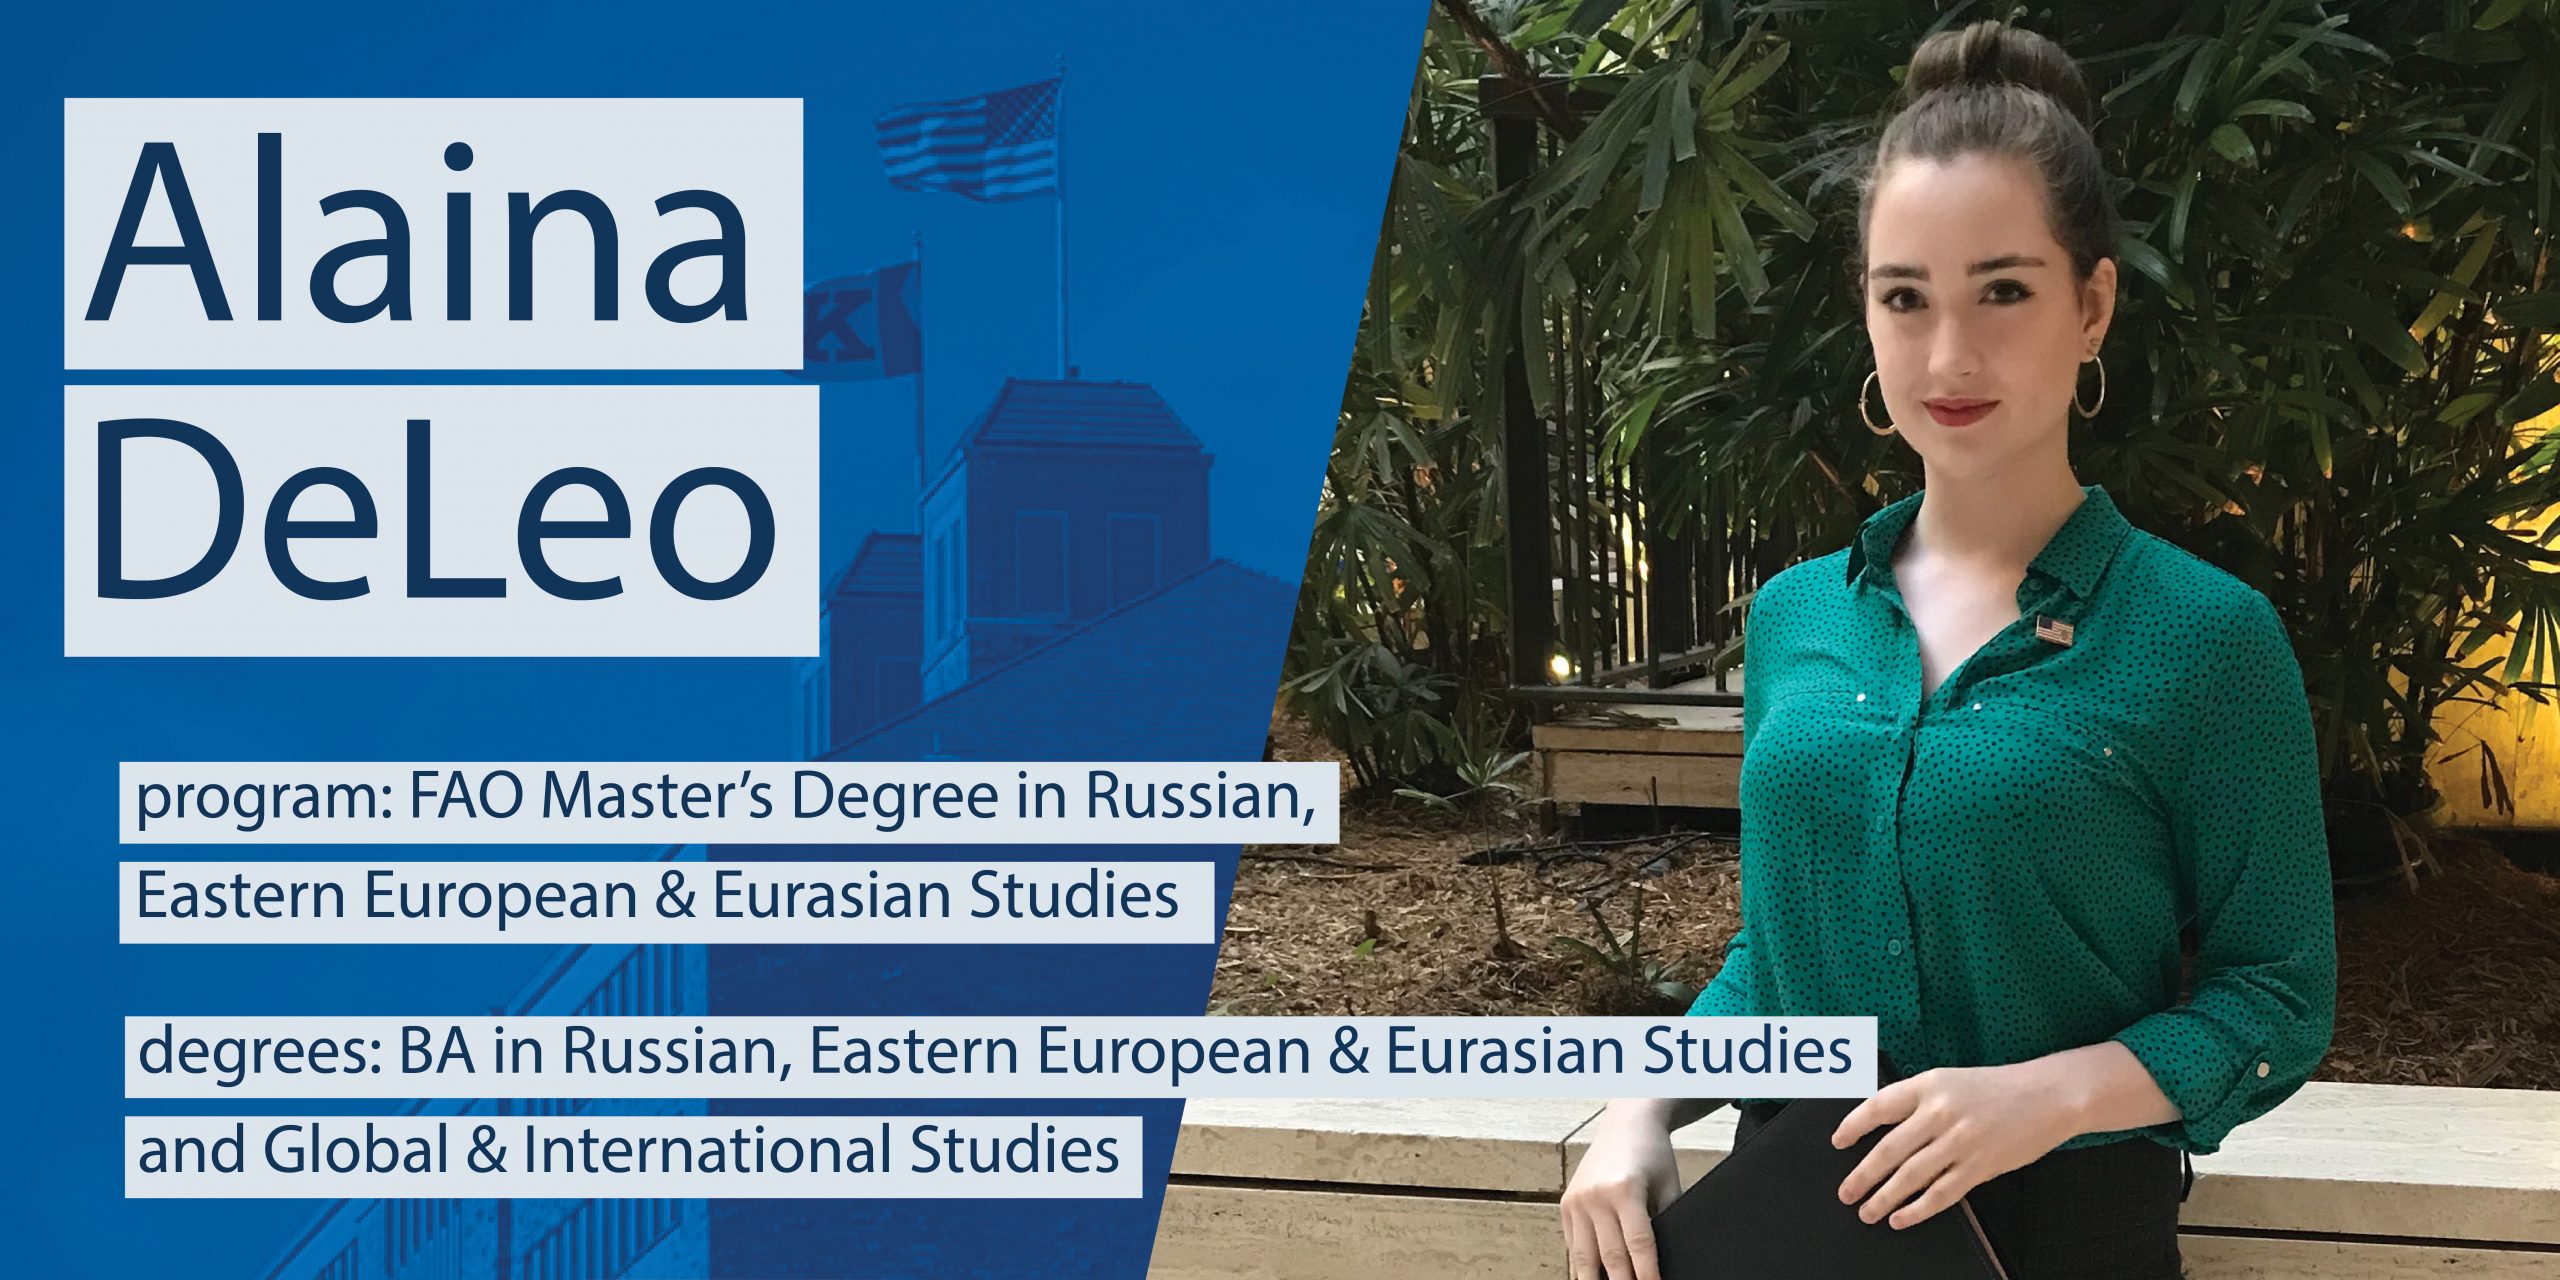 Alaina DeLeo

program: FAO Master's Degree in Russian, Eastern European & Eurasian Studies

degrees: BA in Russian, Eastern European & Eurasian Studies and Global & International Studies